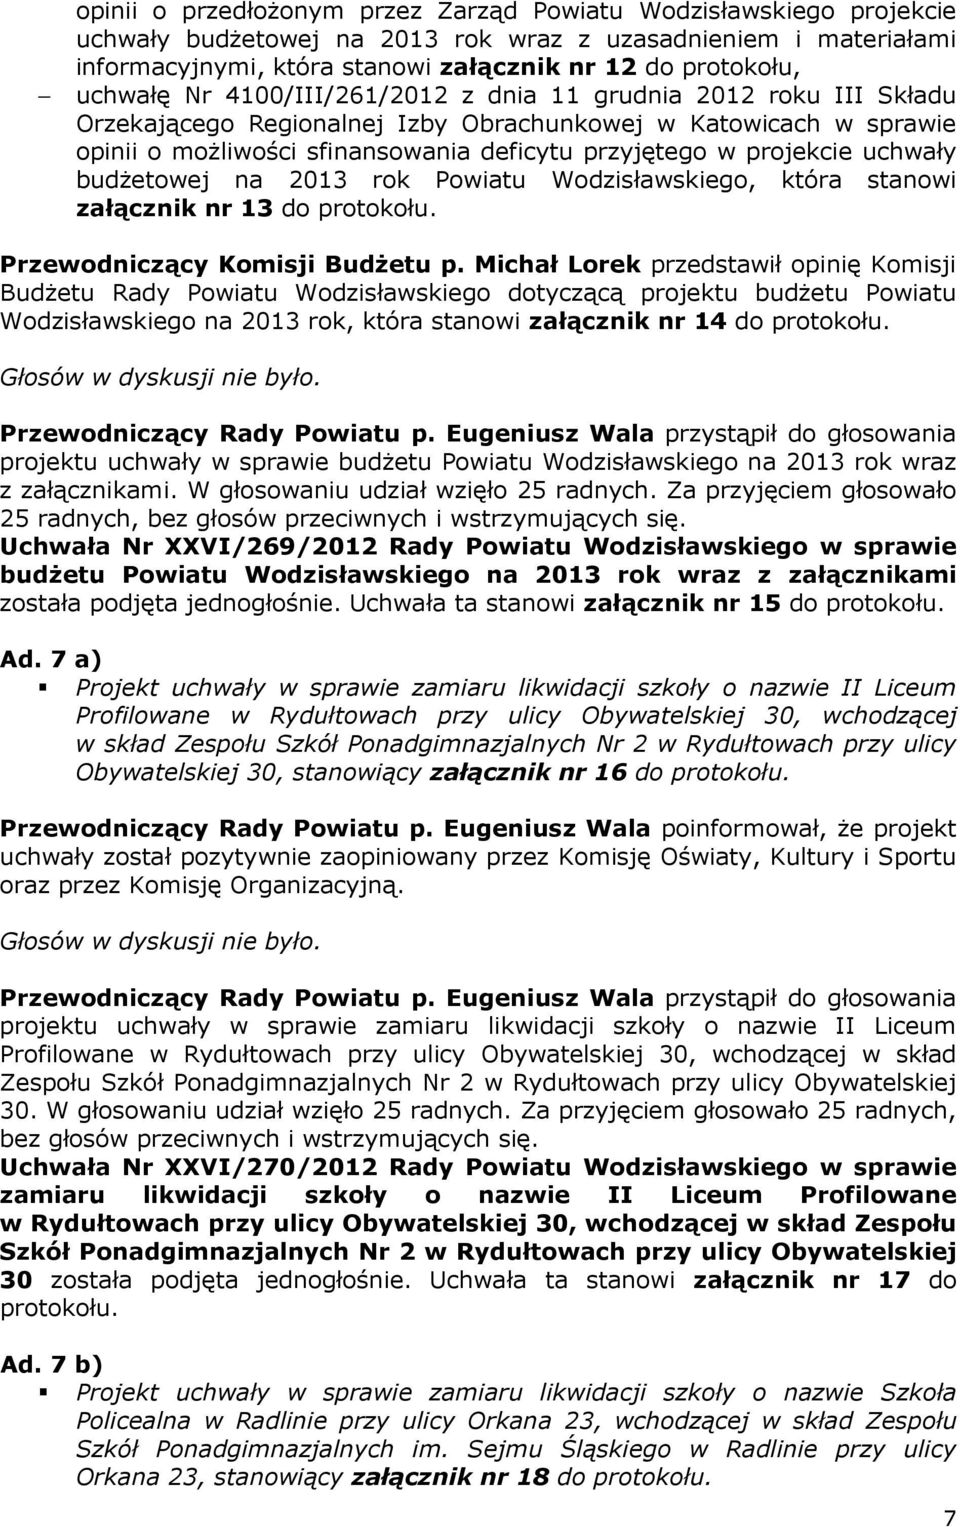 projekcie uchwały budżetowej na 2013 rok Powiatu Wodzisławskiego, która stanowi załącznik nr 13 do protokołu. Przewodniczący Komisji Budżetu p.